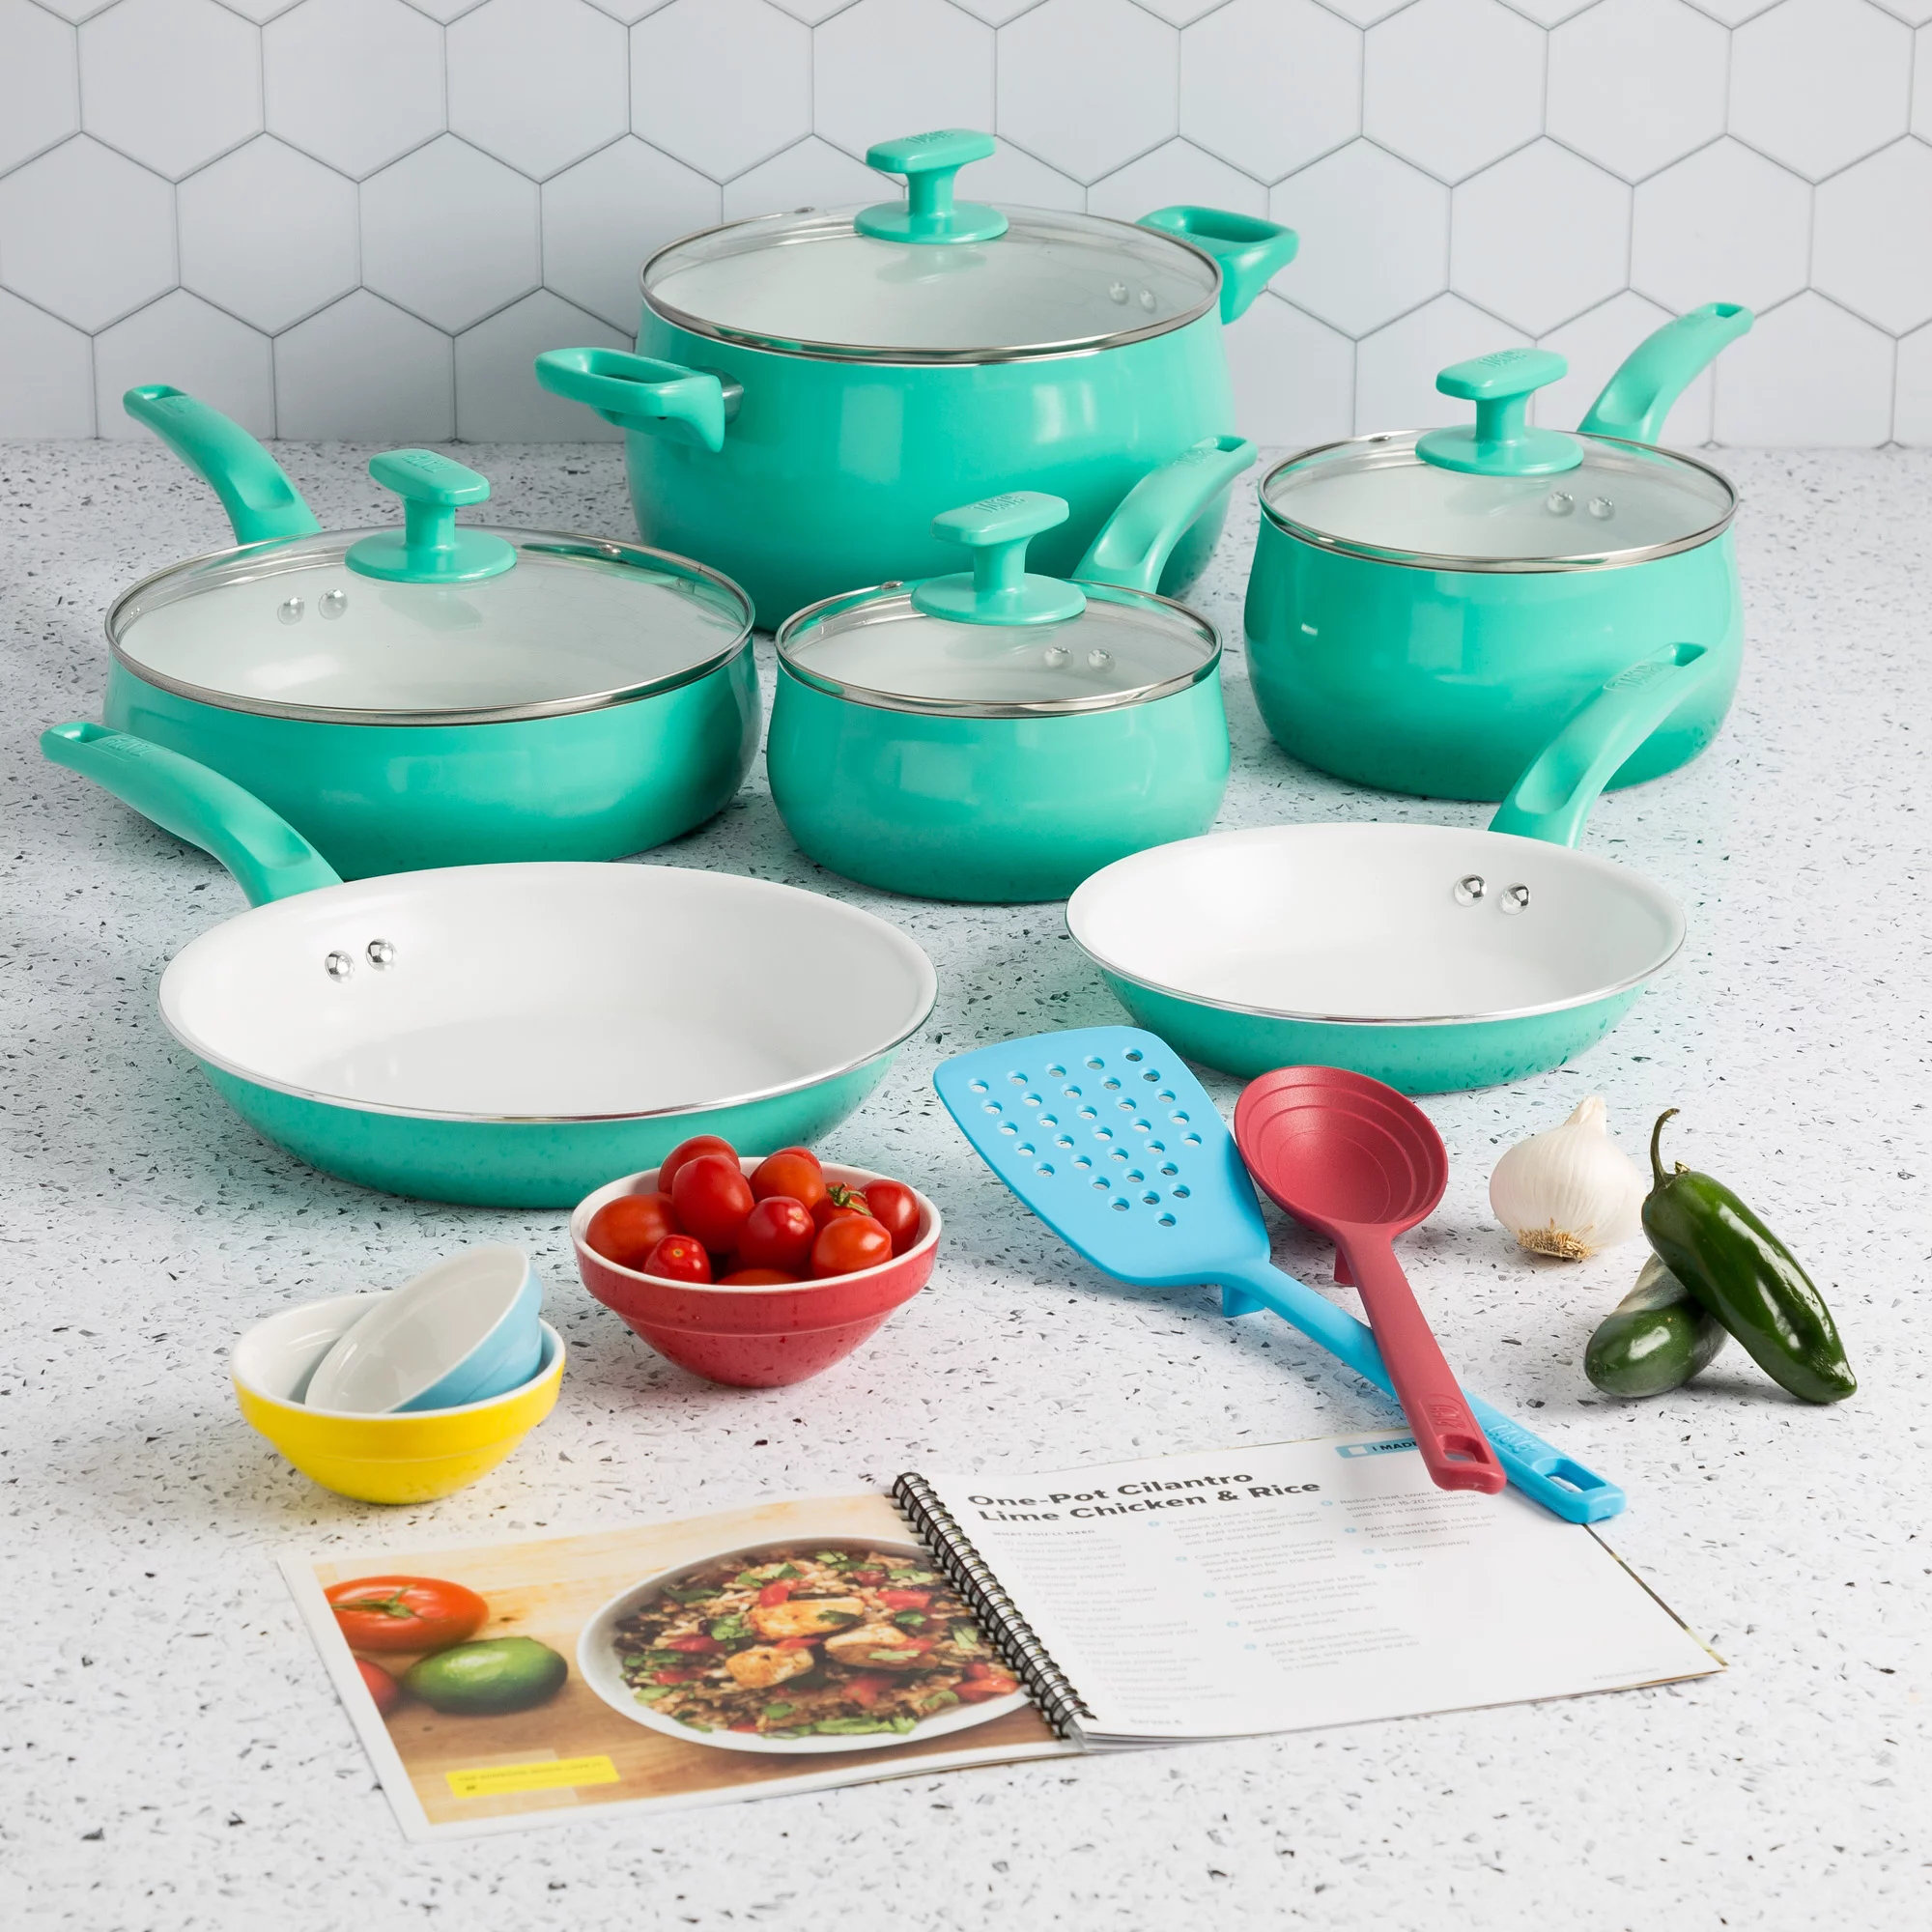 c&g home 18 - Piece Non-Stick Ceramic Cookware Set